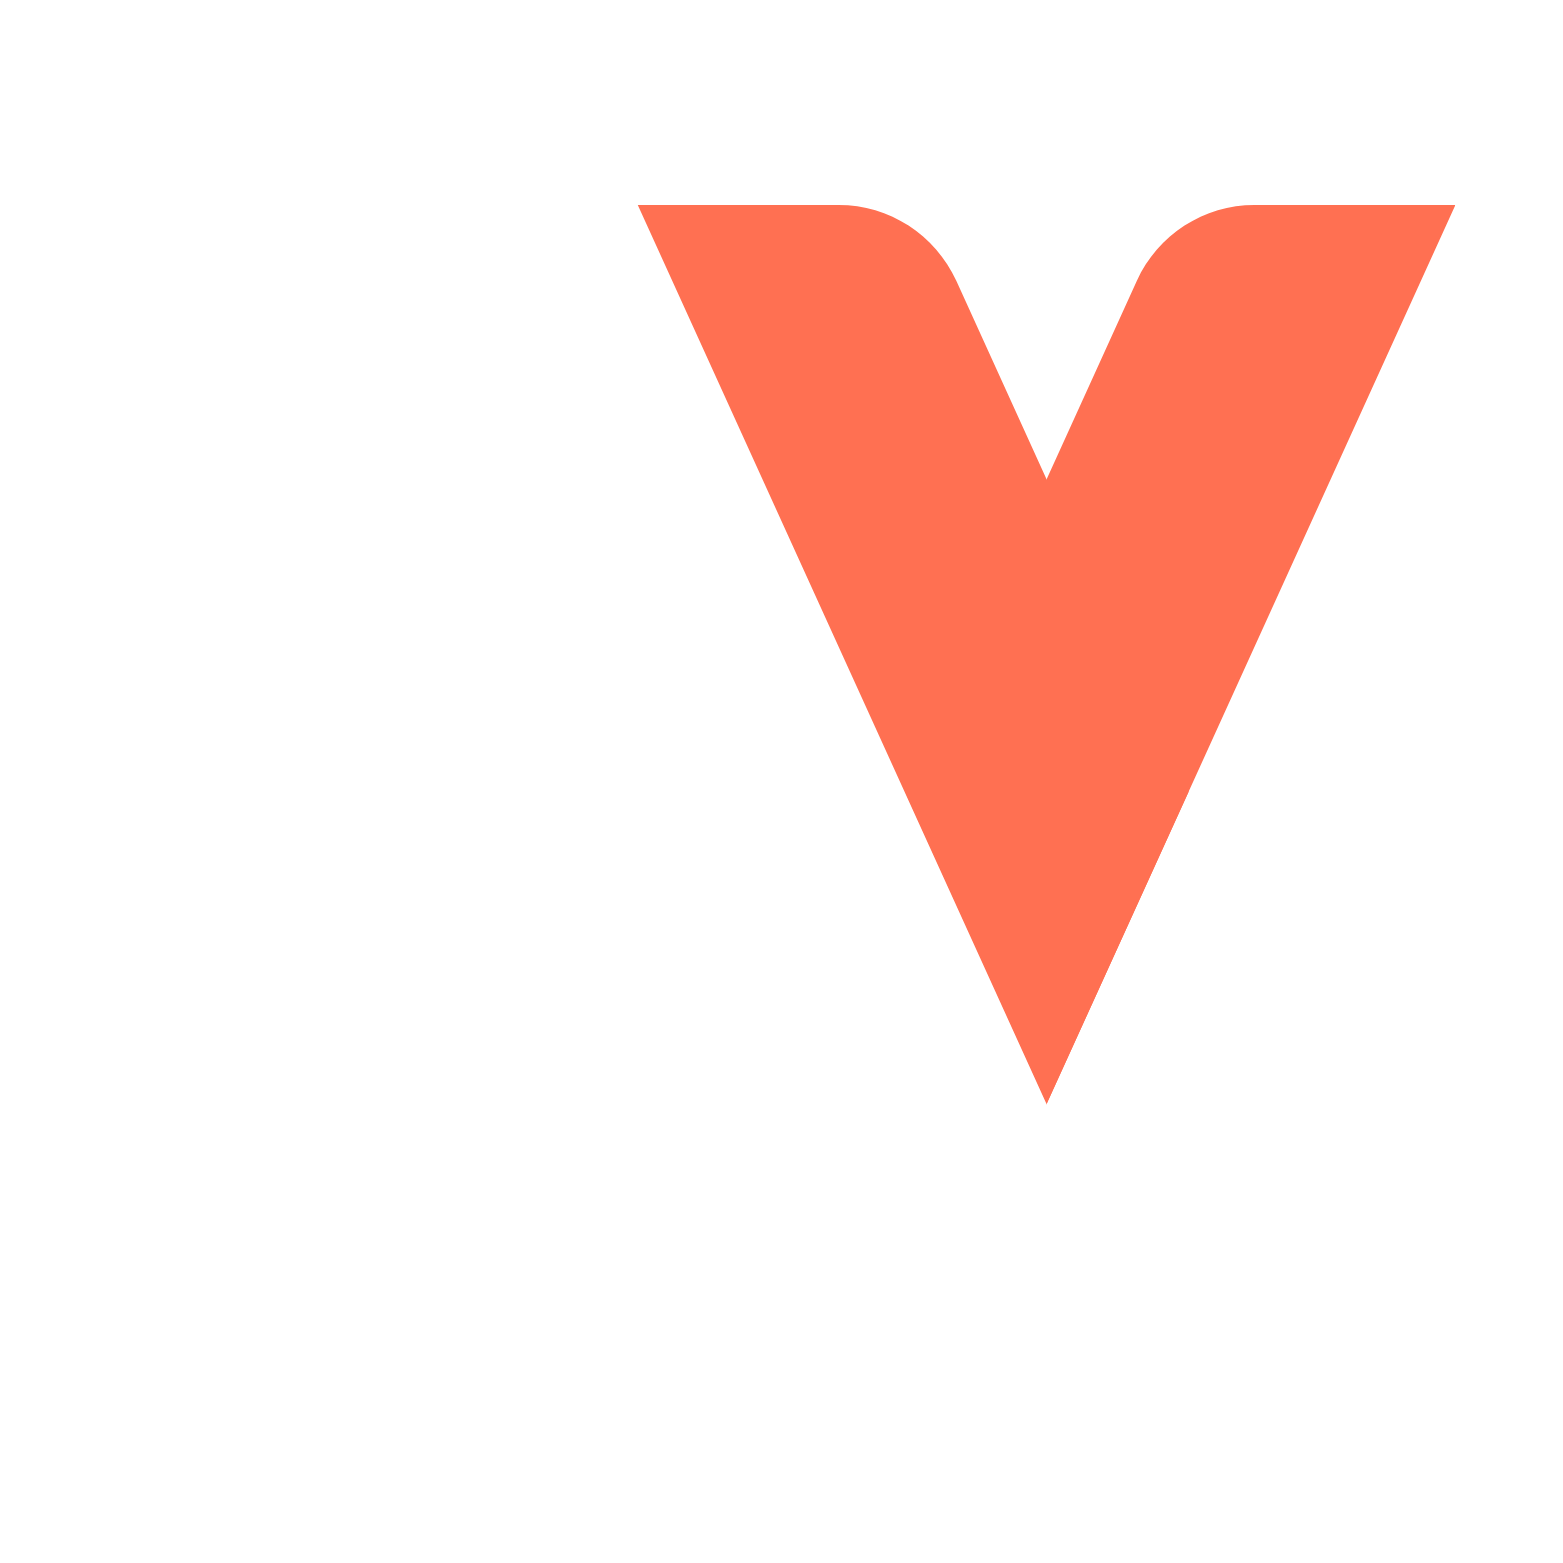 Vit-PR-Logo